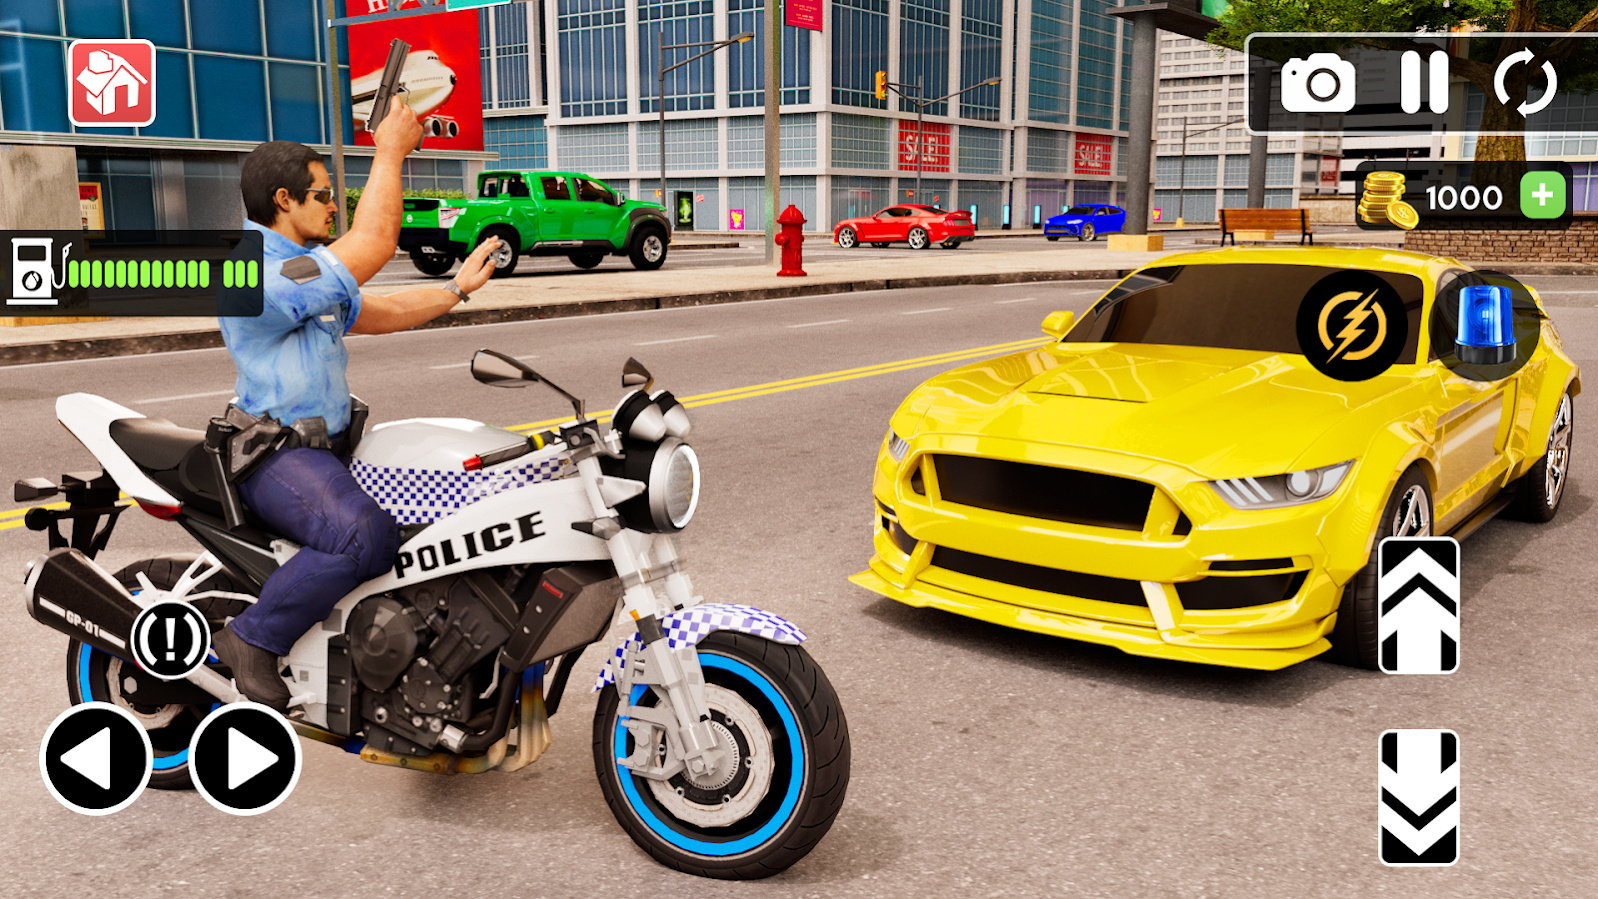 警察驾驶摩托车苹果免费版预约